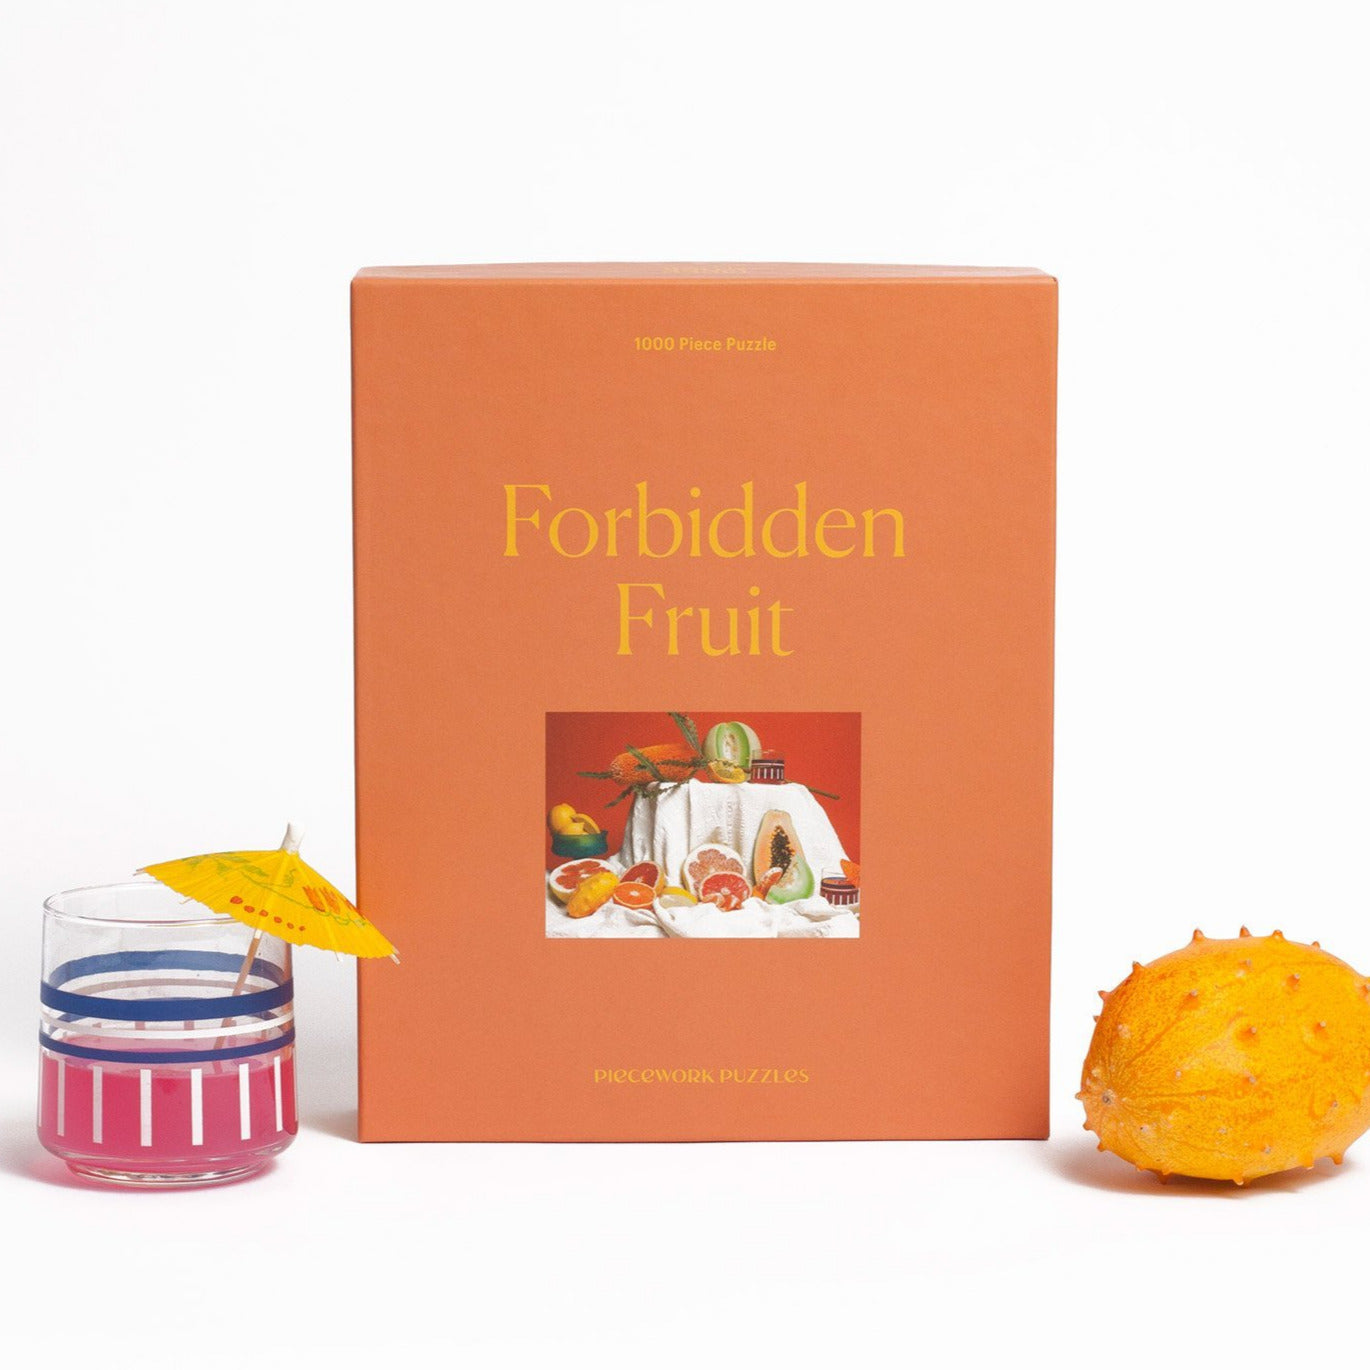 Forbidden Fruit - 1000 Piece Jigsaw Puzzle